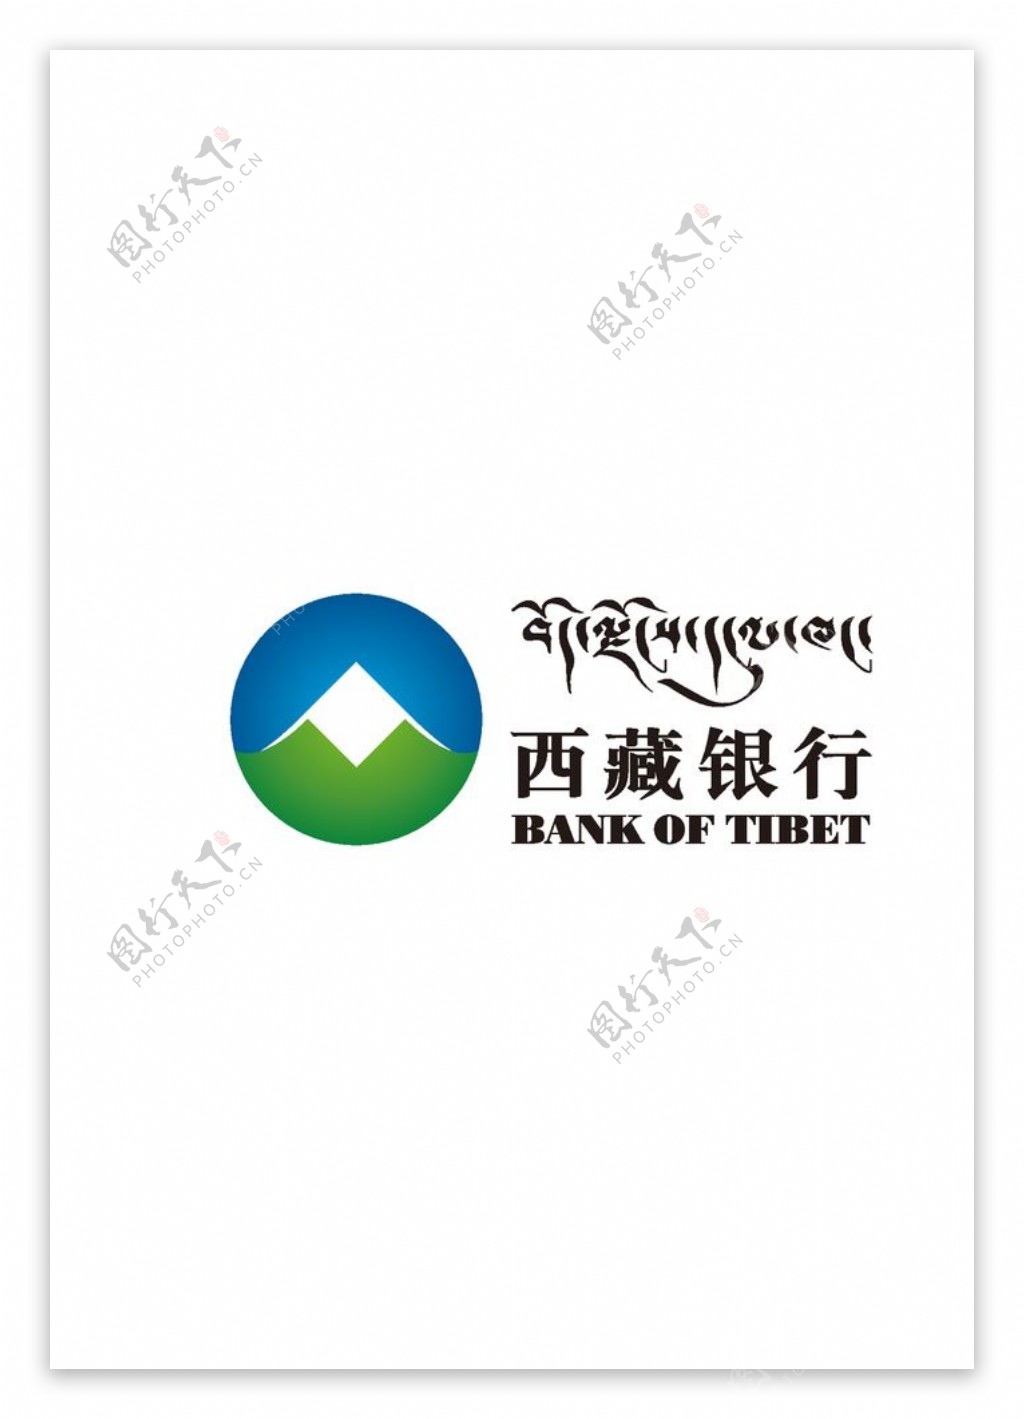 西藏银行logo标志图片